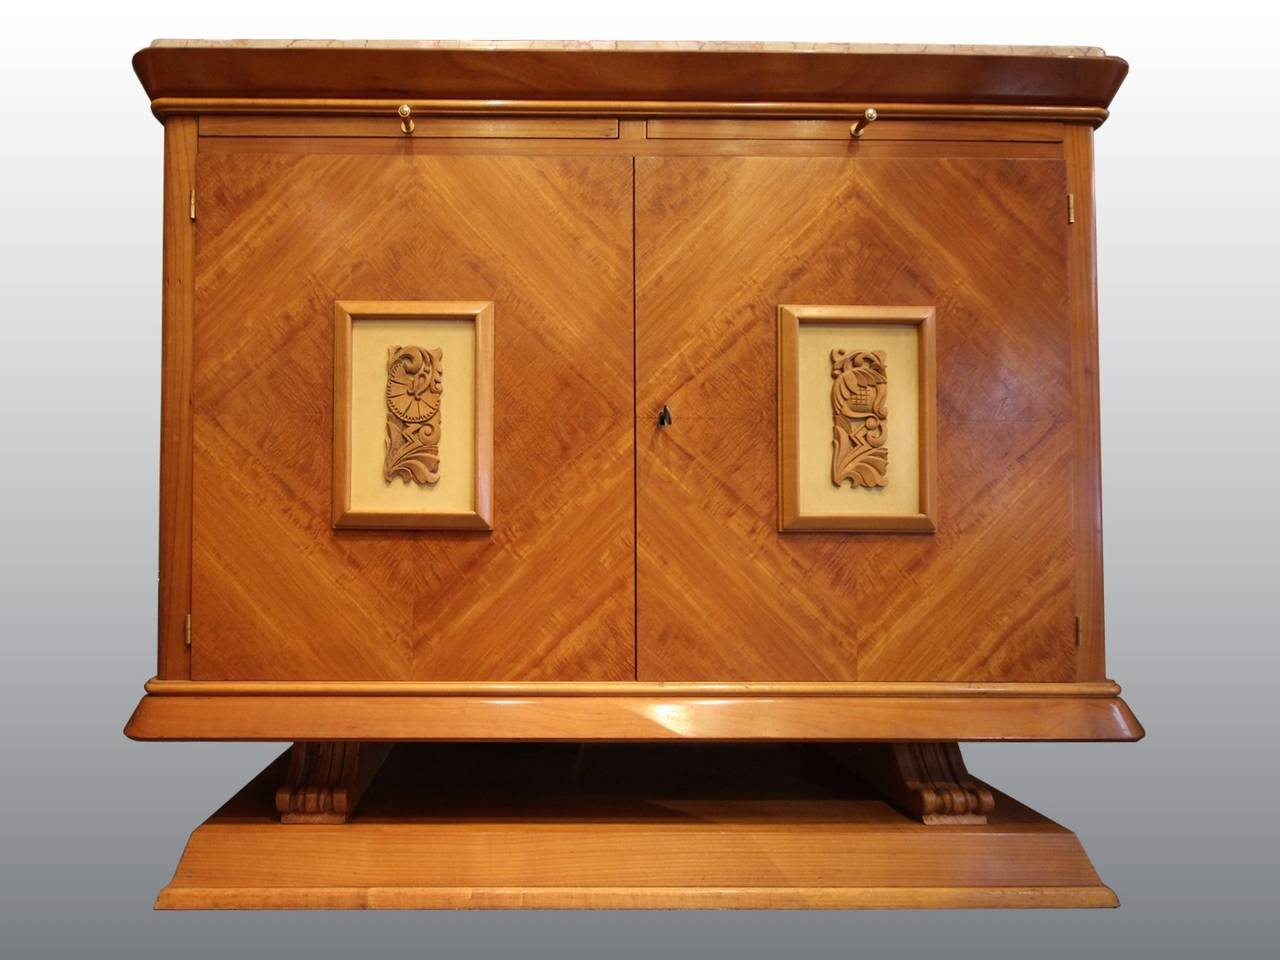 Jolie armoire des années 1940 en sycomore avec deux tirettes. Les portes sont ornées de deux panneaux en bois sculpté. Dessus original en marbre. Intérieur et étagères en placage d'acajou.